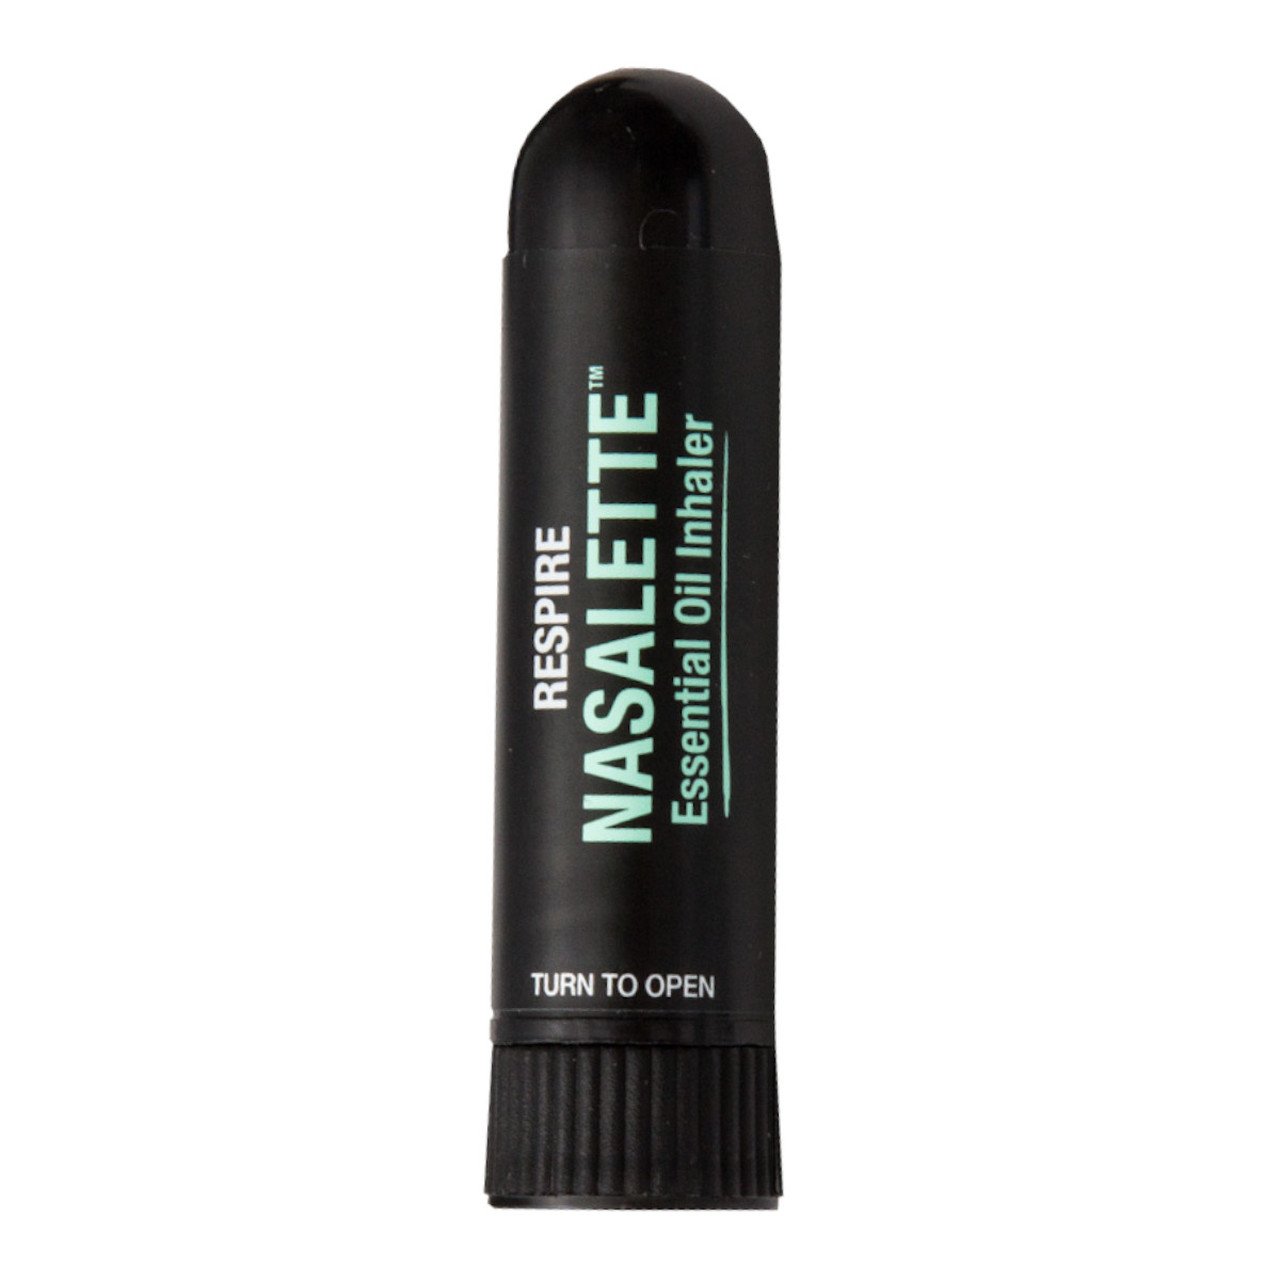 BLACK CHICKEN REMEDIES Respire Nasalette Natural Essential Oil Inhaler